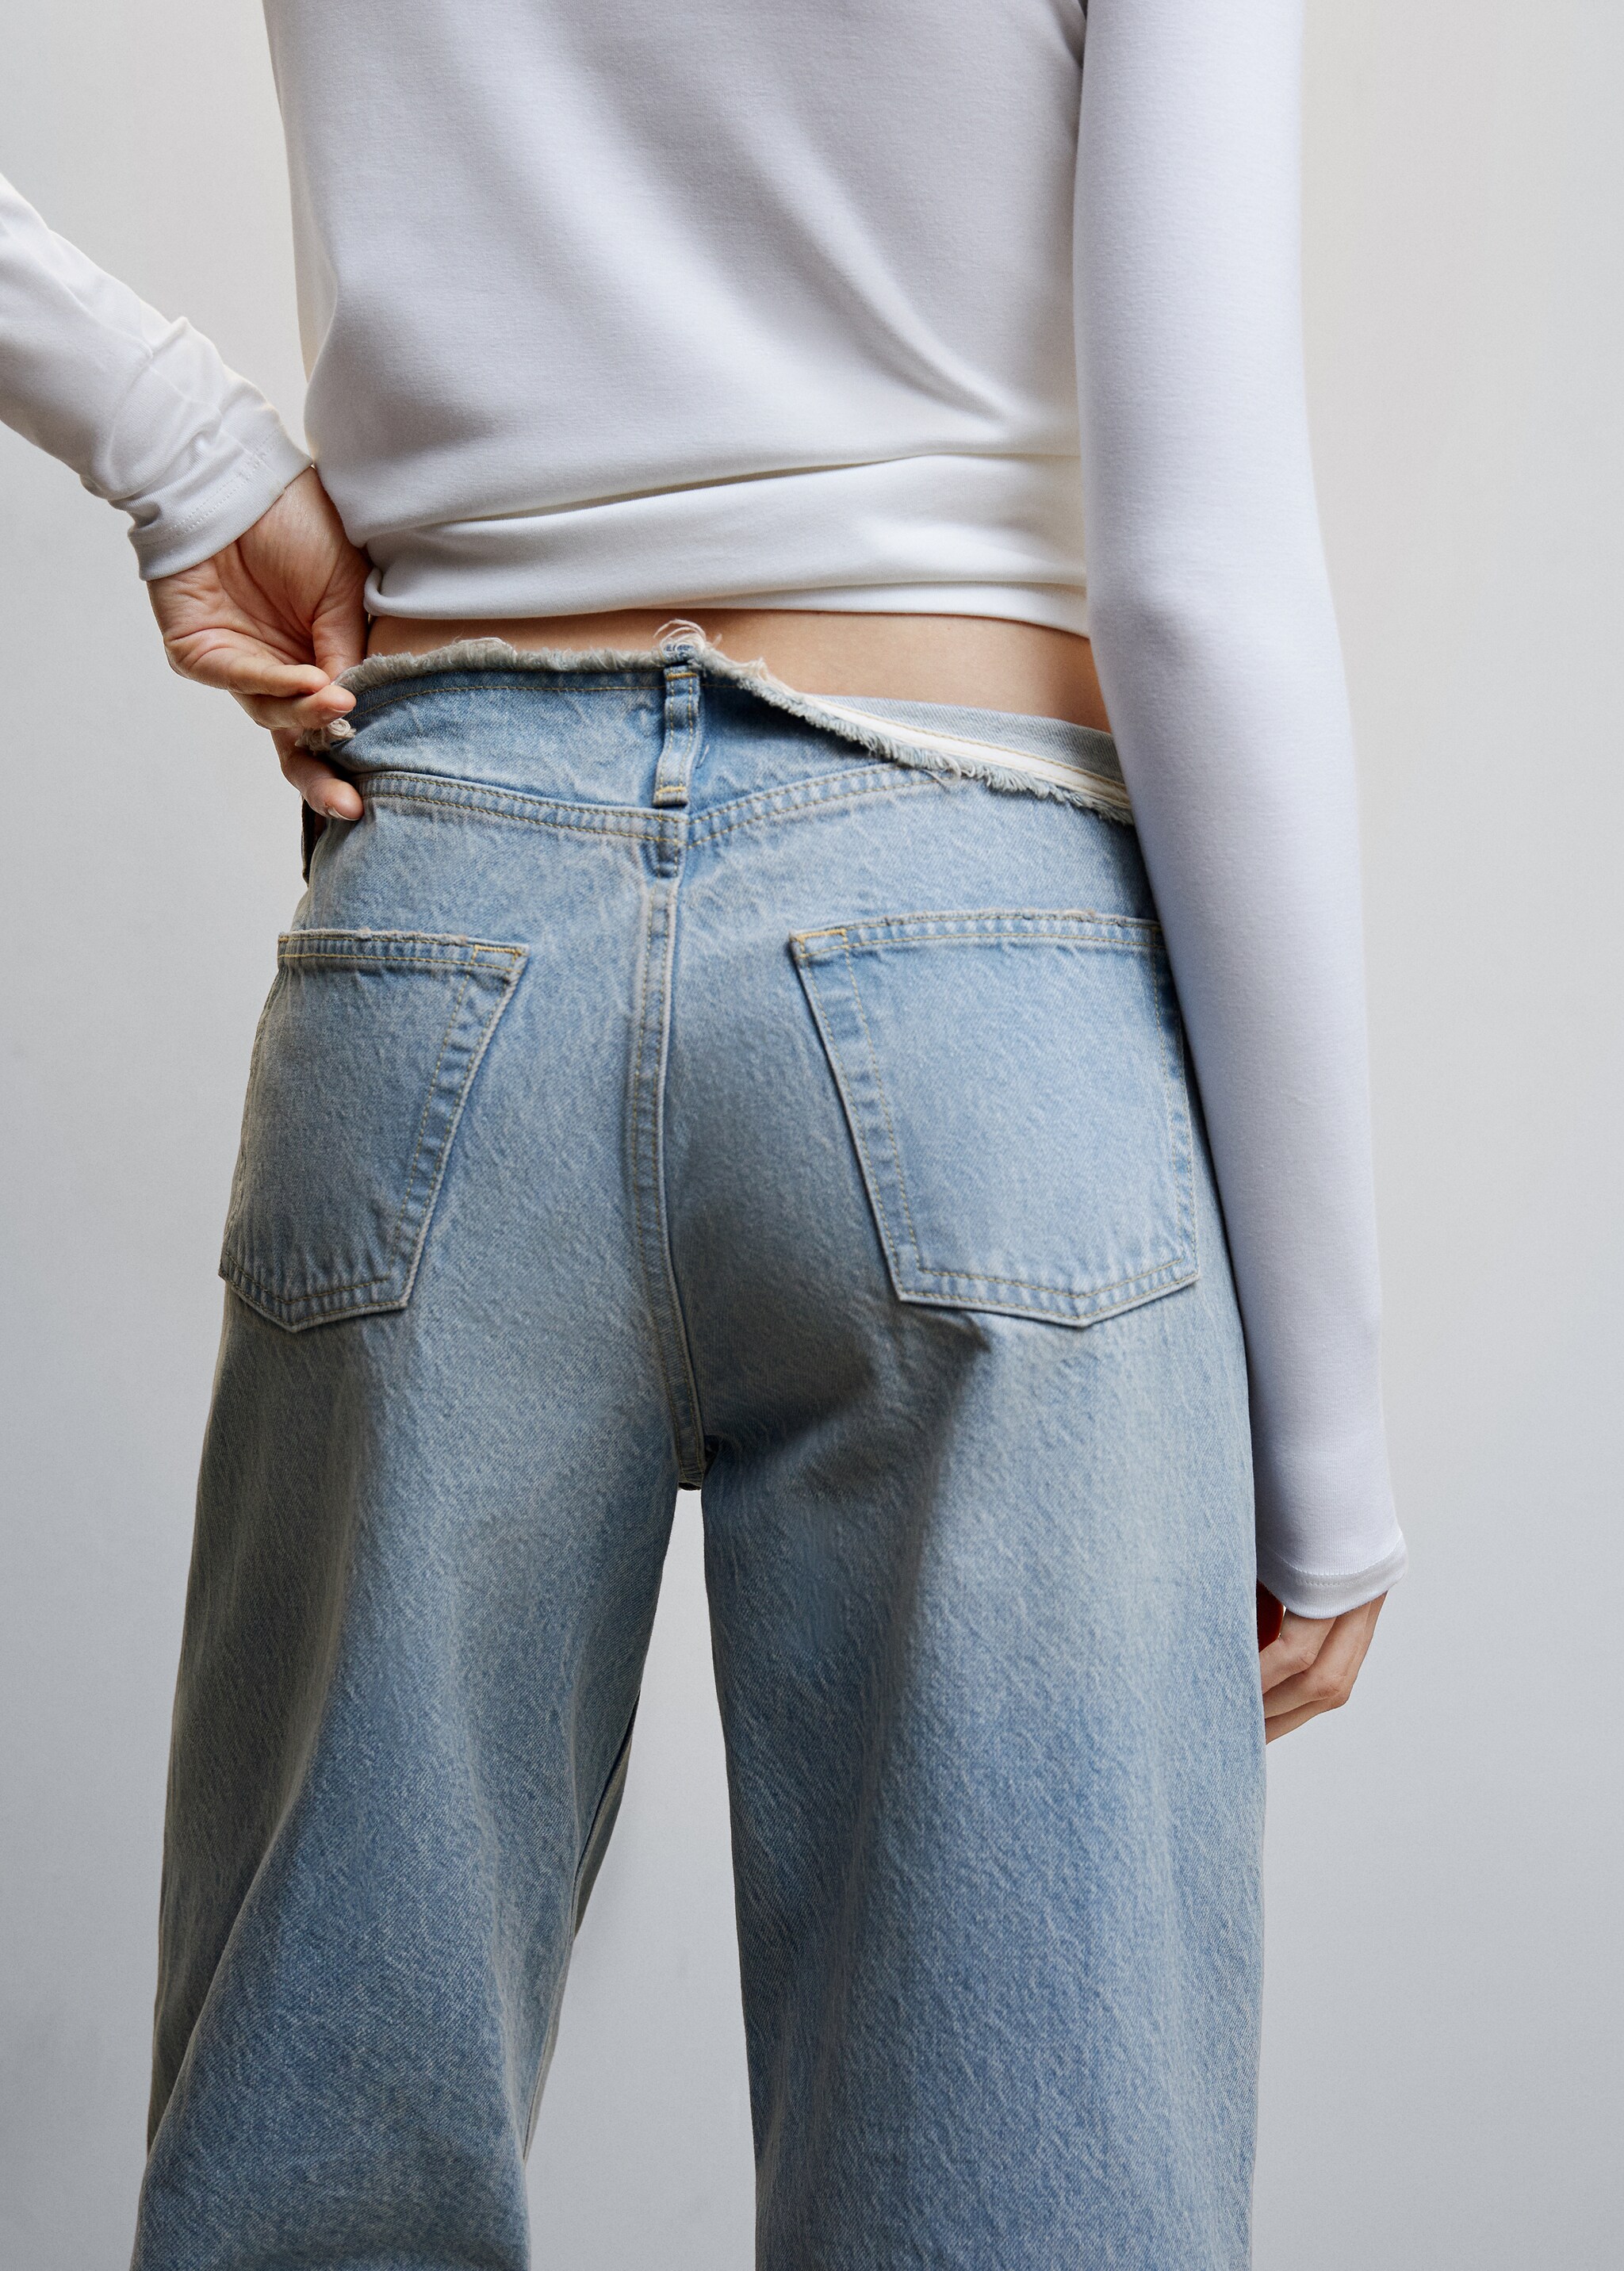 Jeans wideleg tiro medio - Detalle del artículo 1